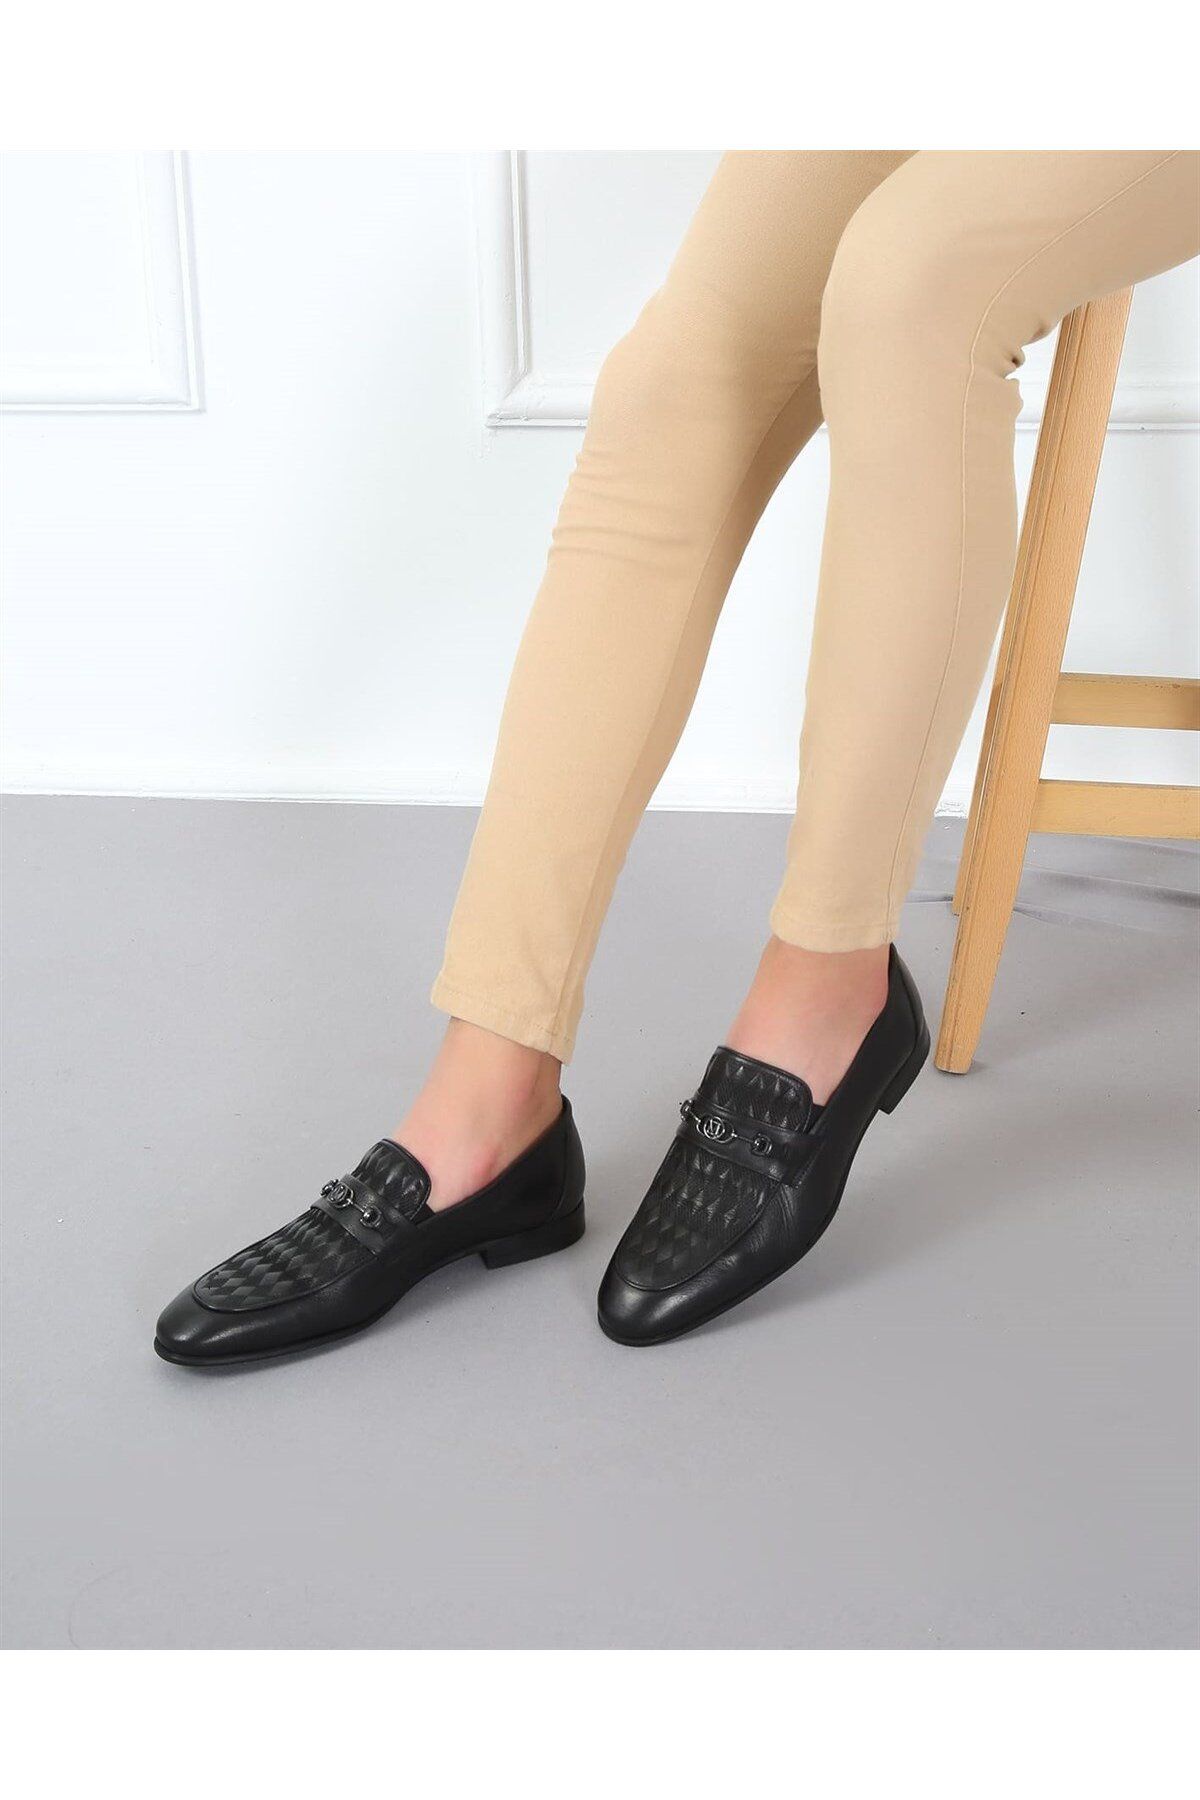 CassidoShoes Siyah Deri Lazer Baskı Kösele Enjeksiyon Taban Erkek Klasik Ayakkabı